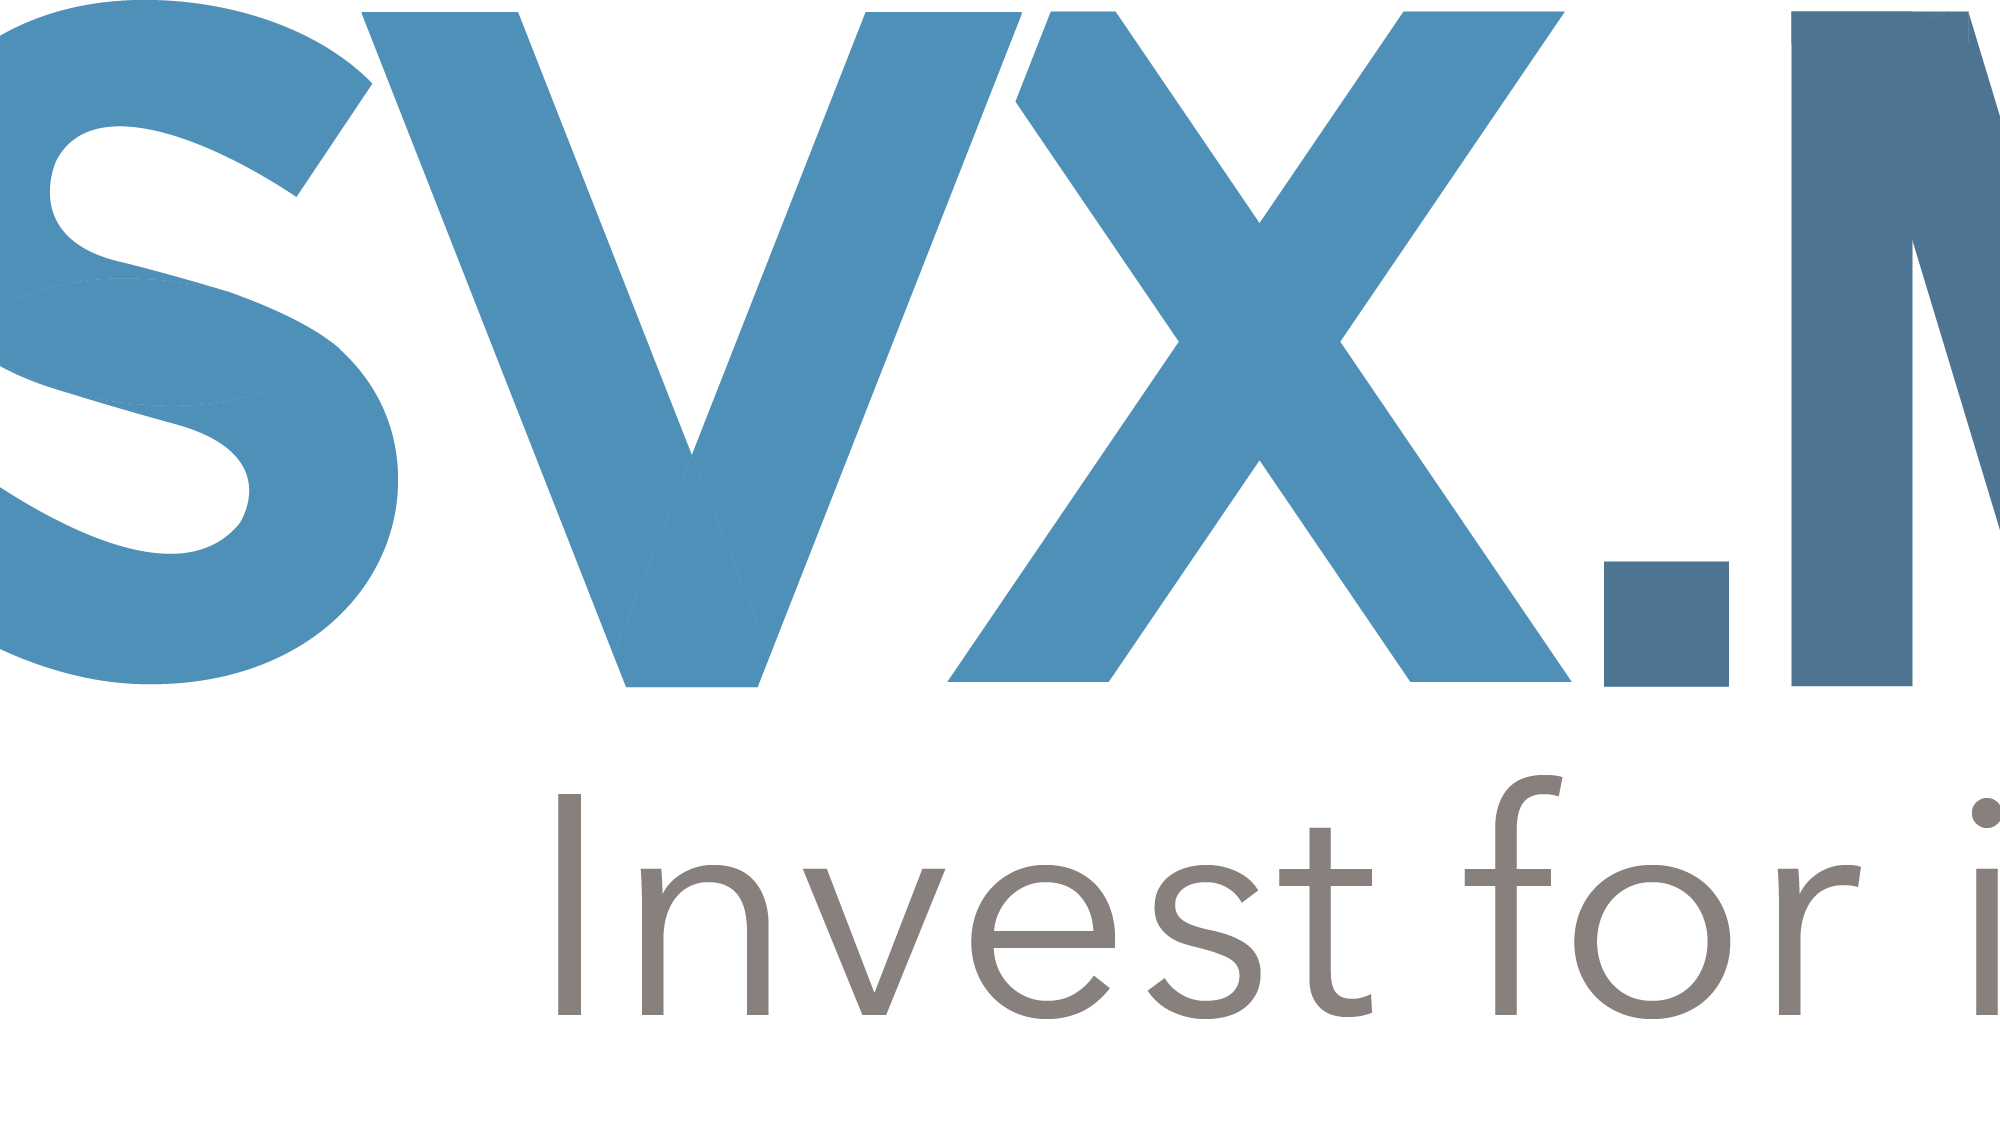 SVX logo - GSG